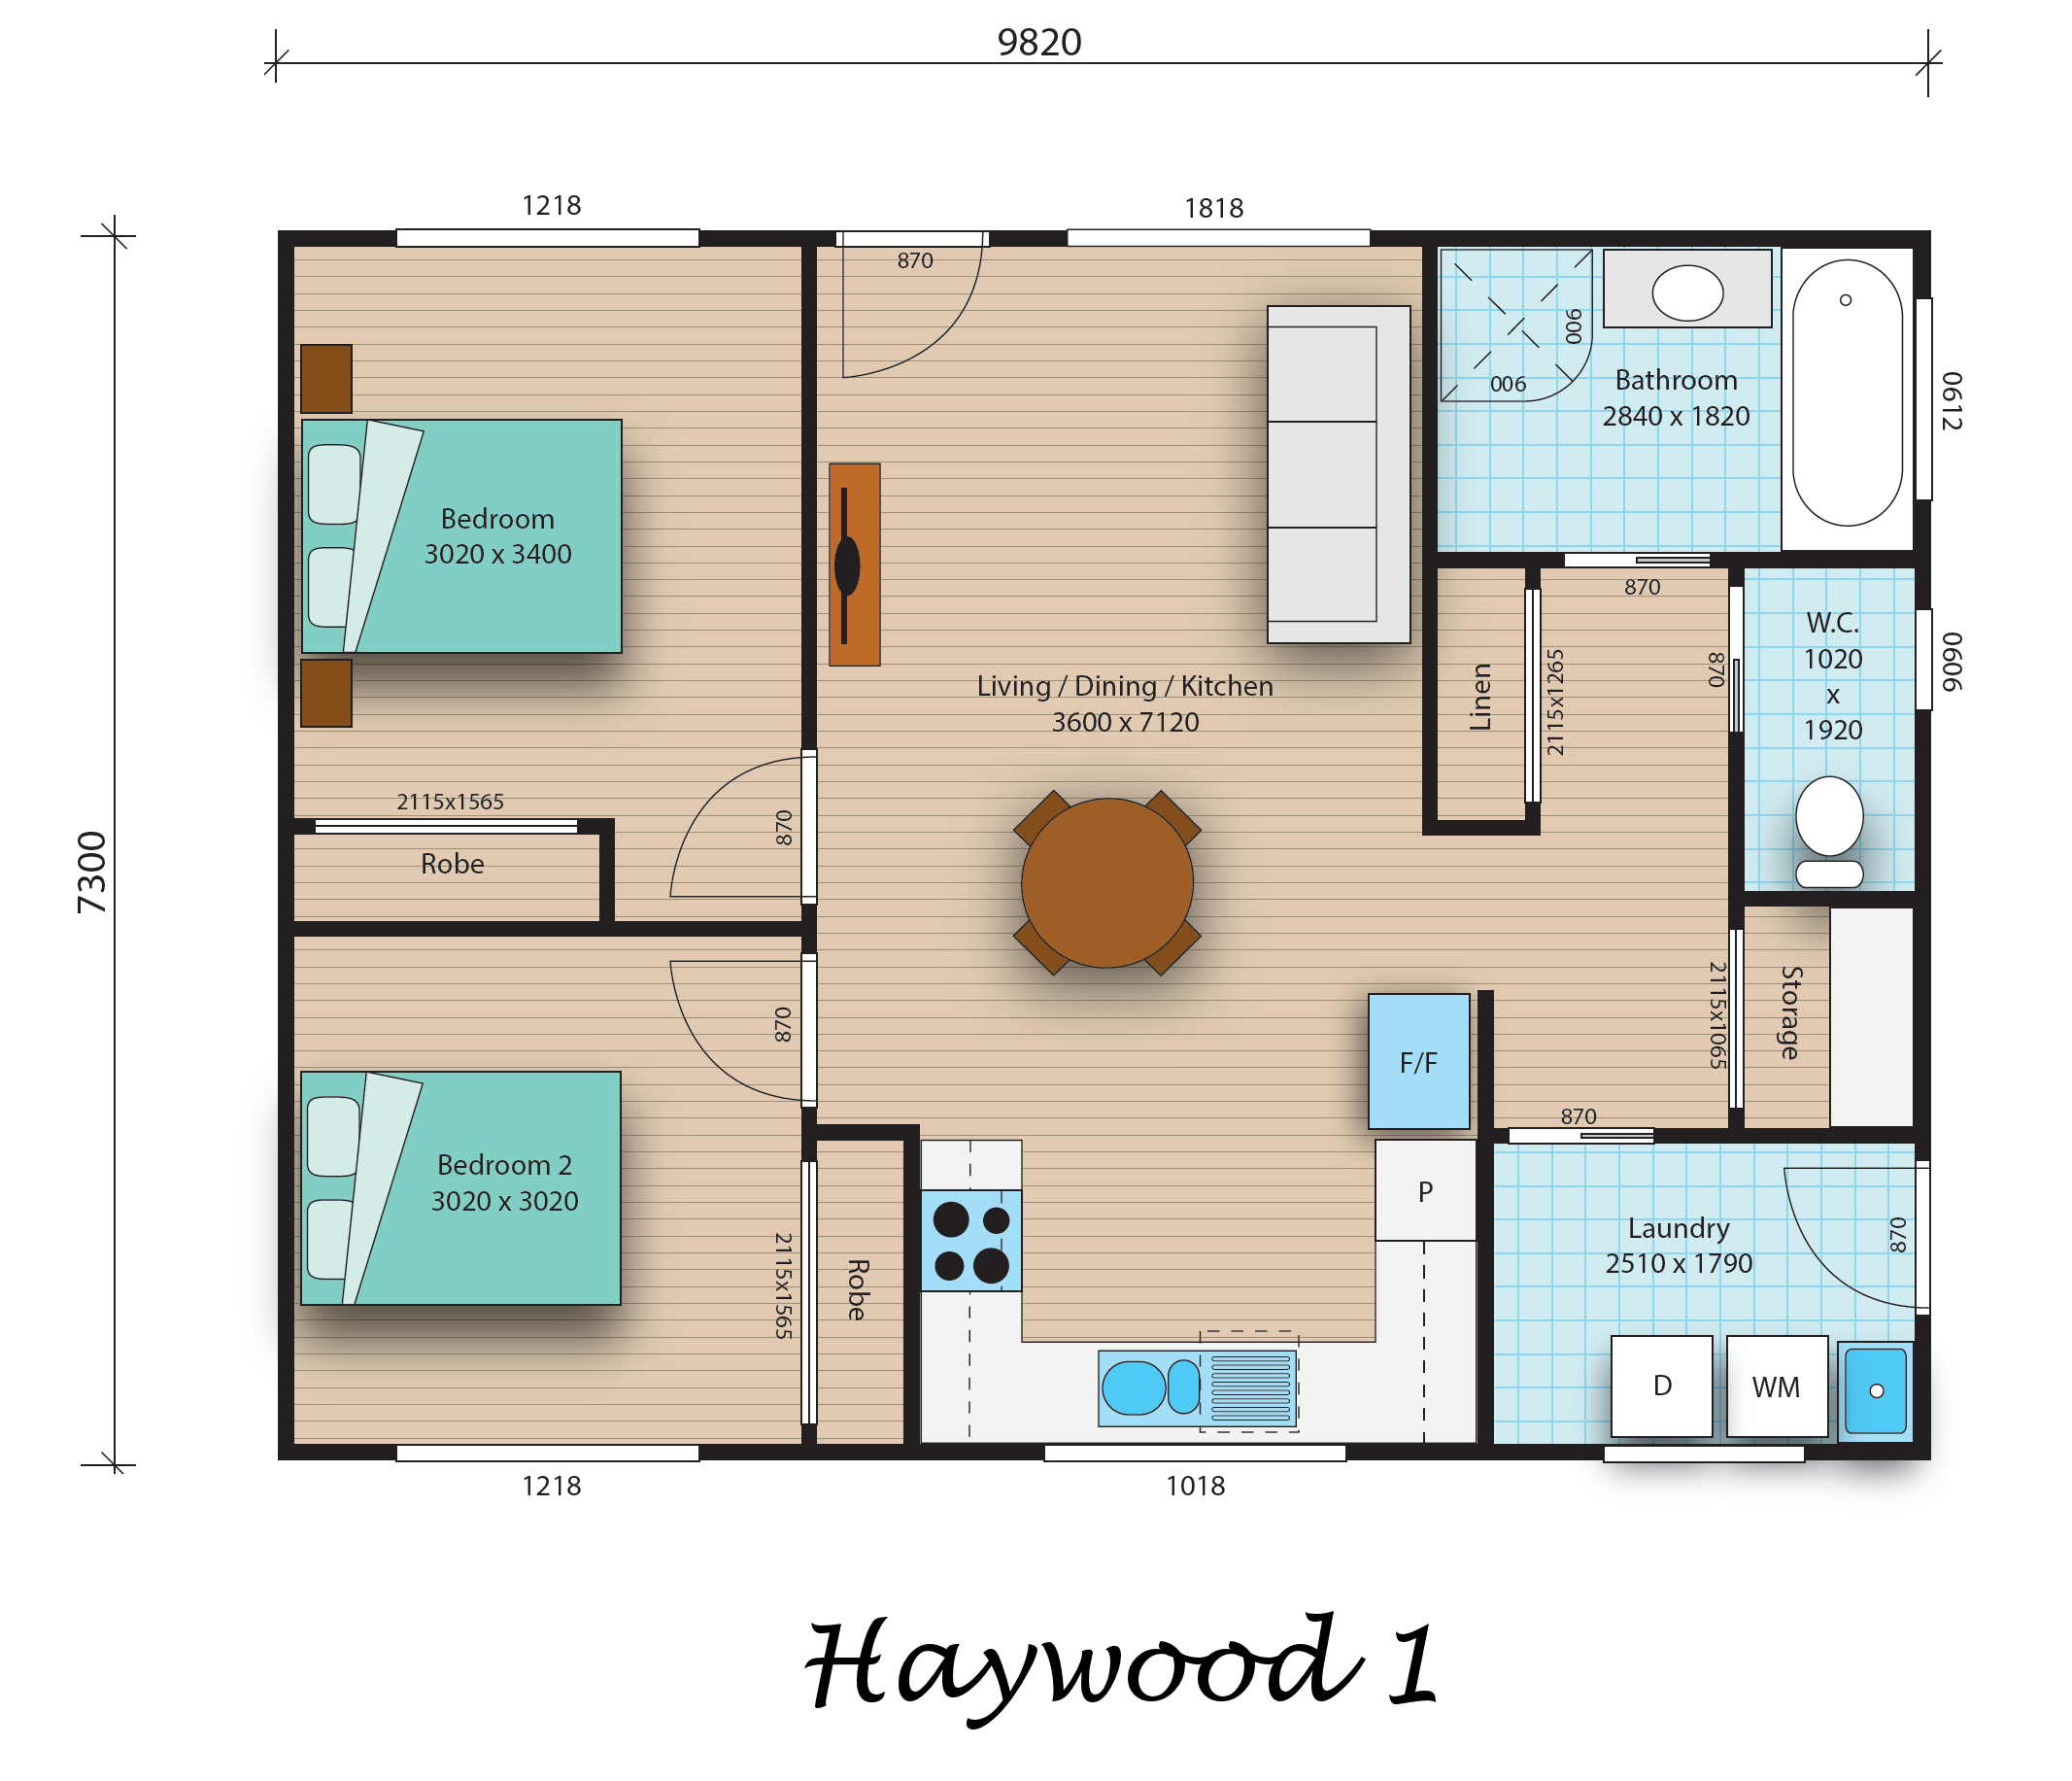 Haywood 1 floorplan image